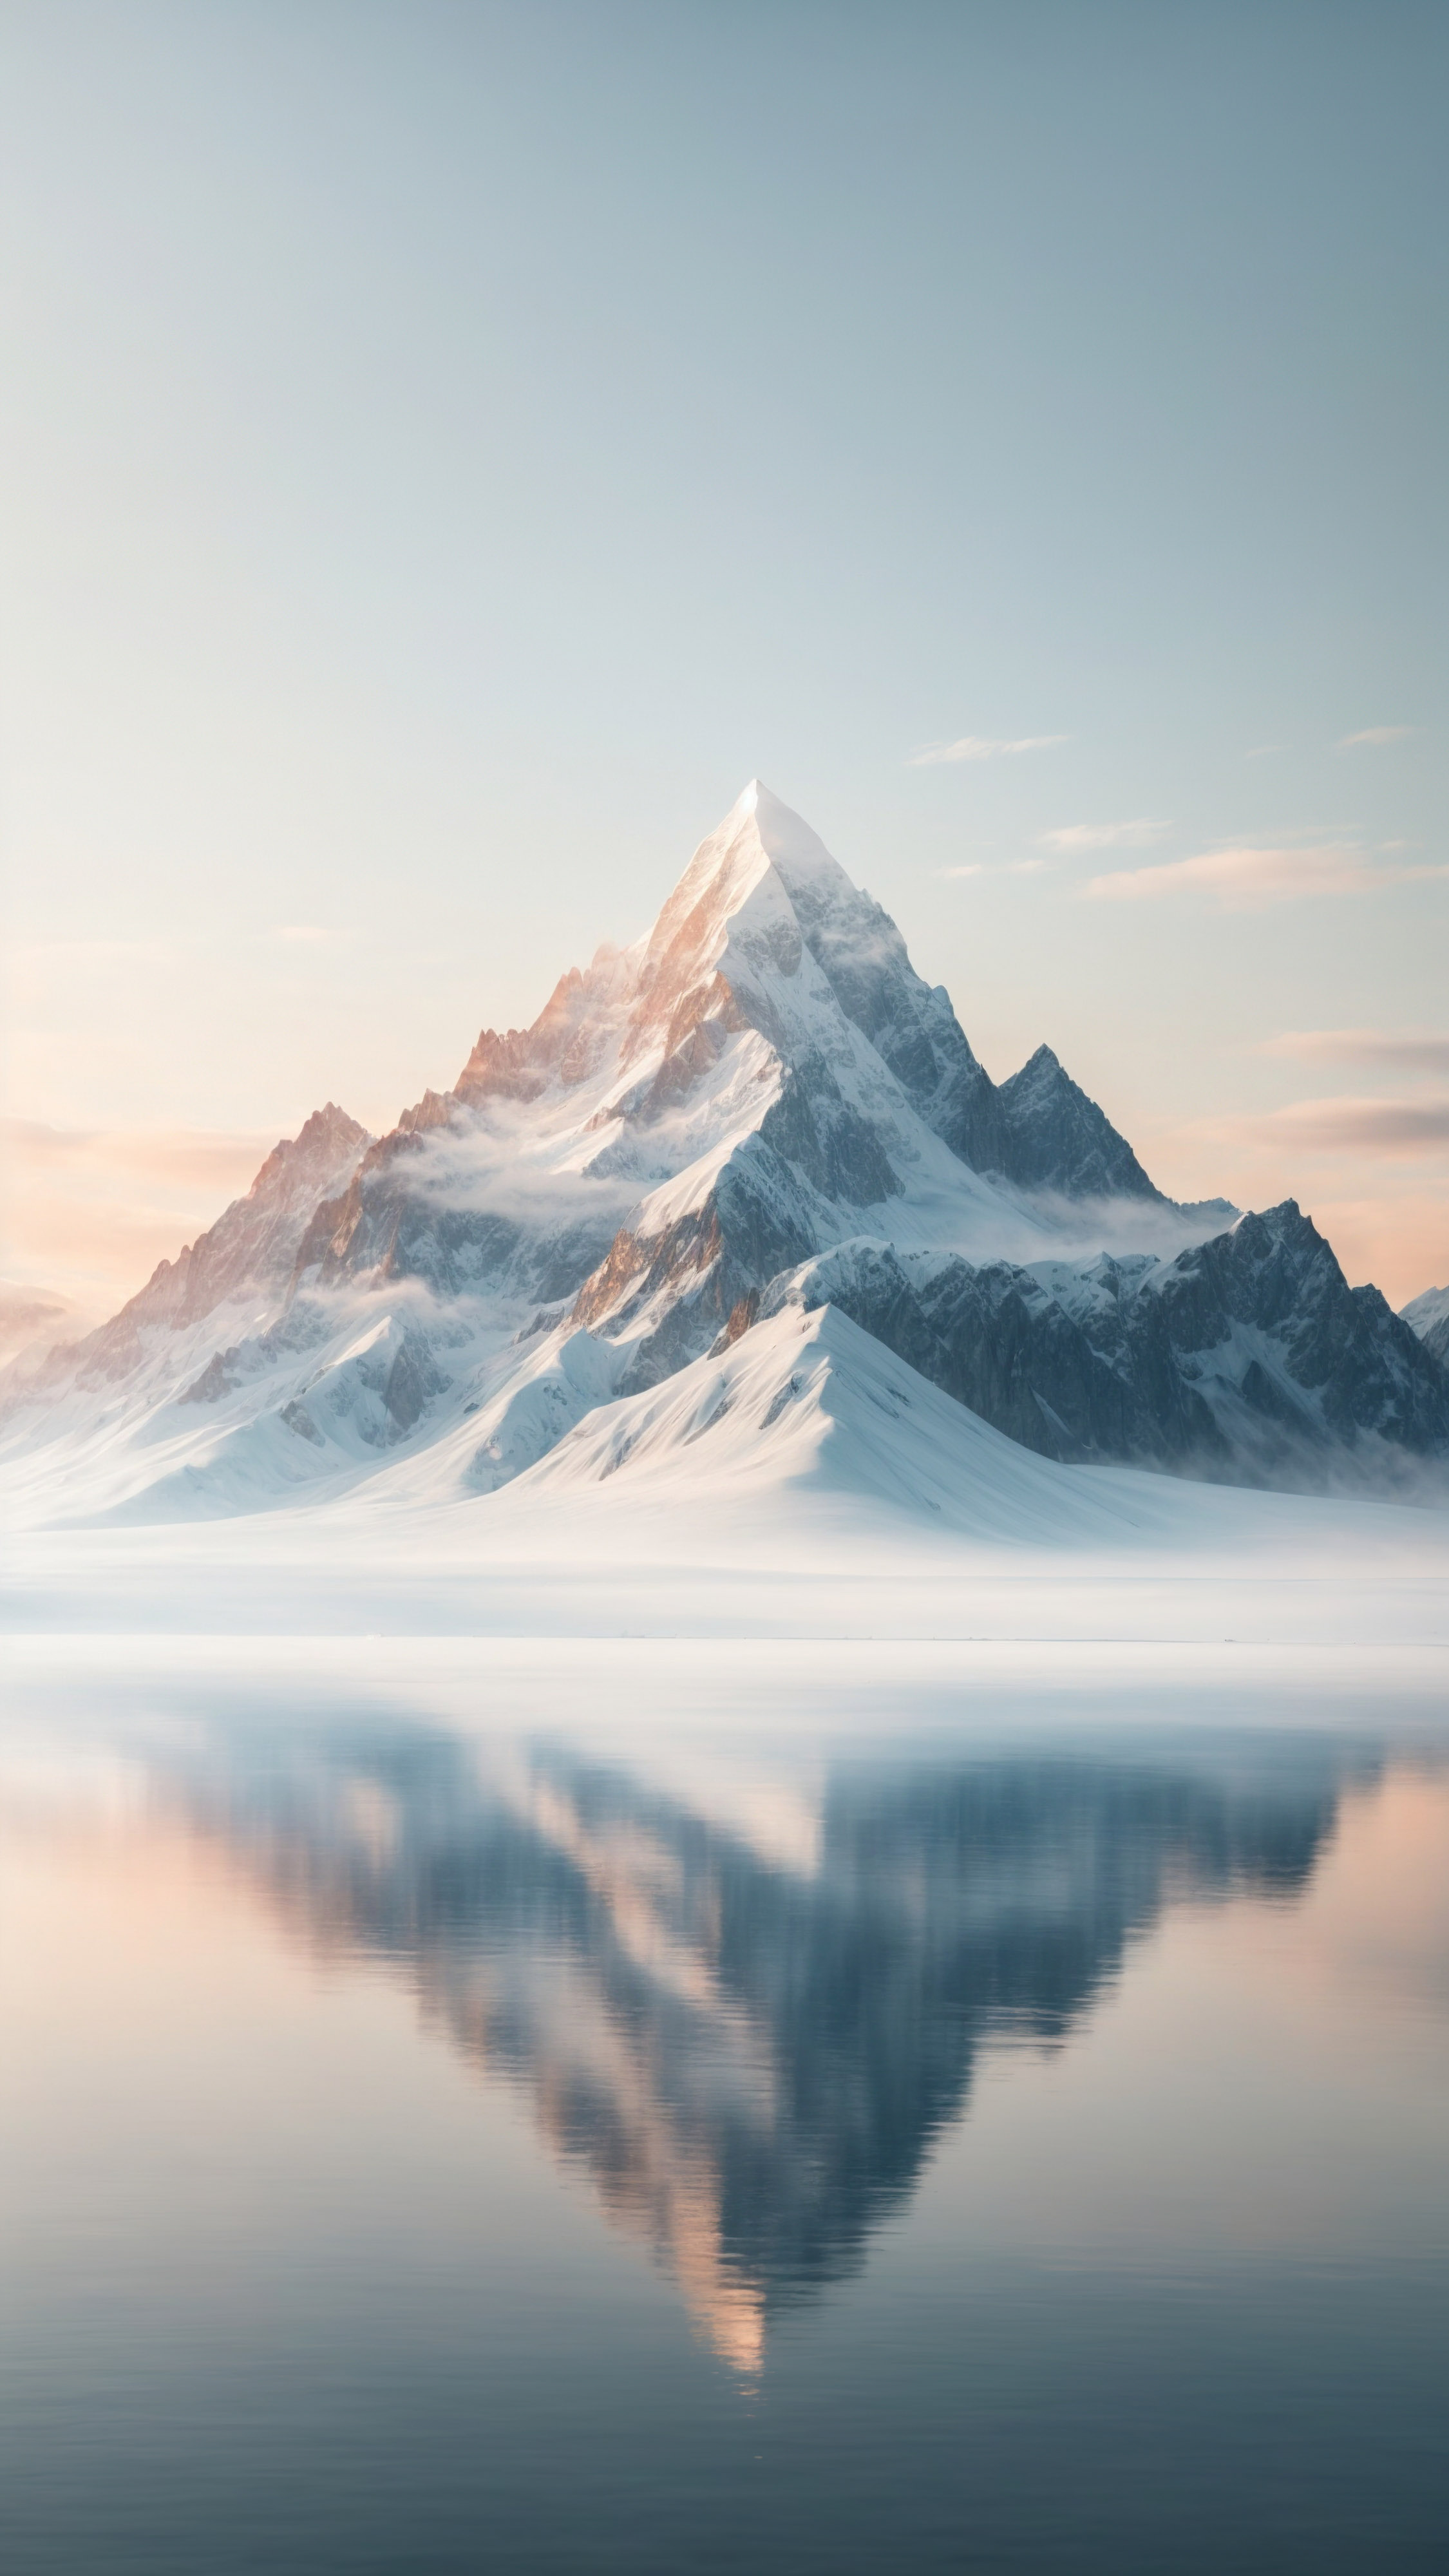 Appréciez la simplicité d'une montagne minimaliste avec une forme simple et une couleur dégradée, sur fond blanc, avec notre fond d'écran pour iPhone présentant une montagne enneigée.